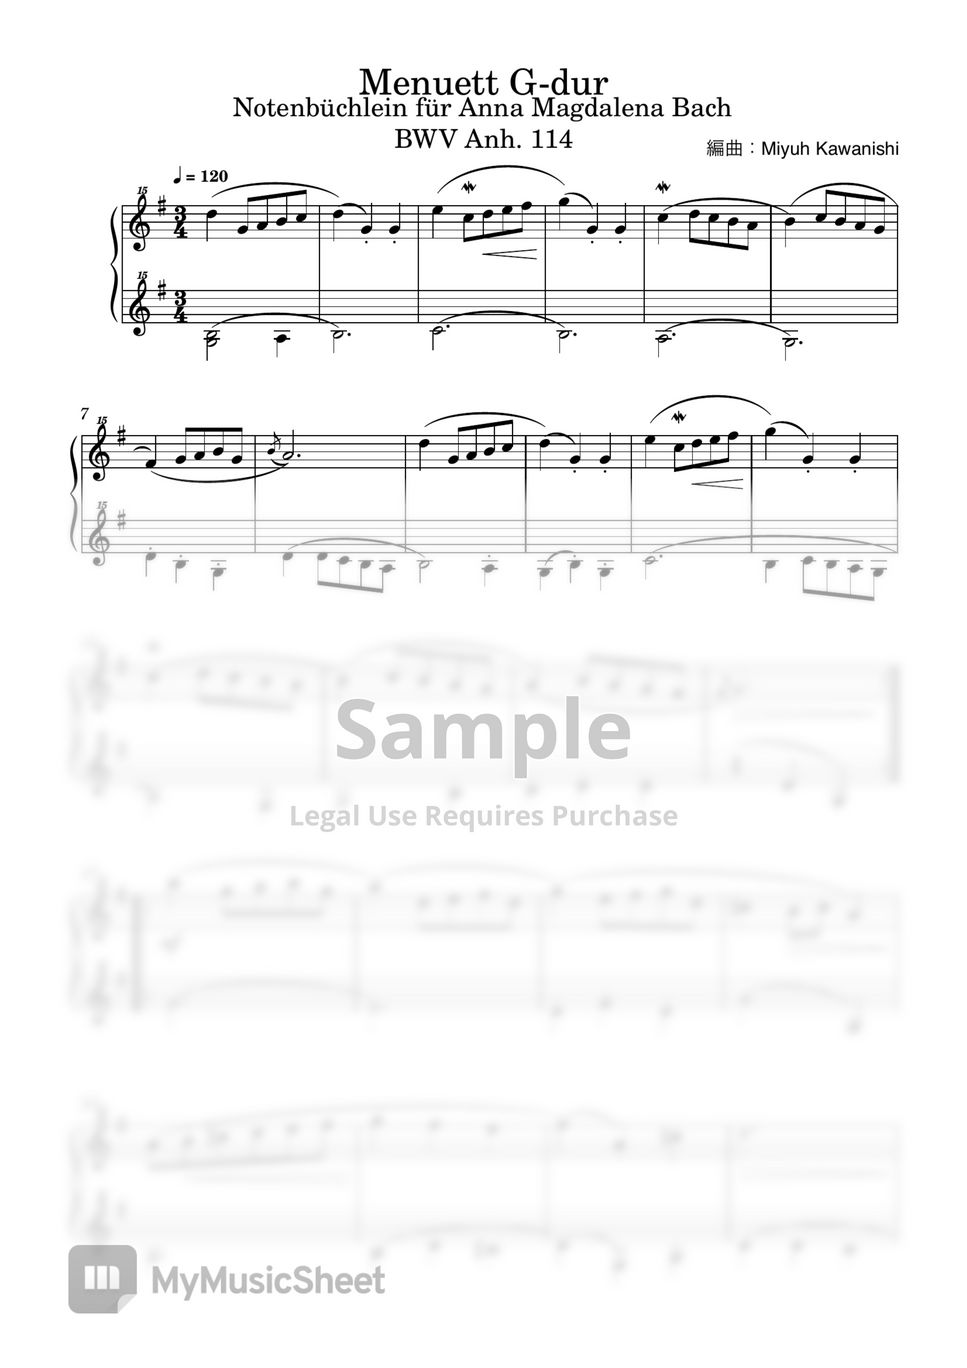 バッハ / クリスティアン・ペツォールト - メヌエット ト長調 BWV Anh.114 (トイピアノ / クラシック) by 川西三裕